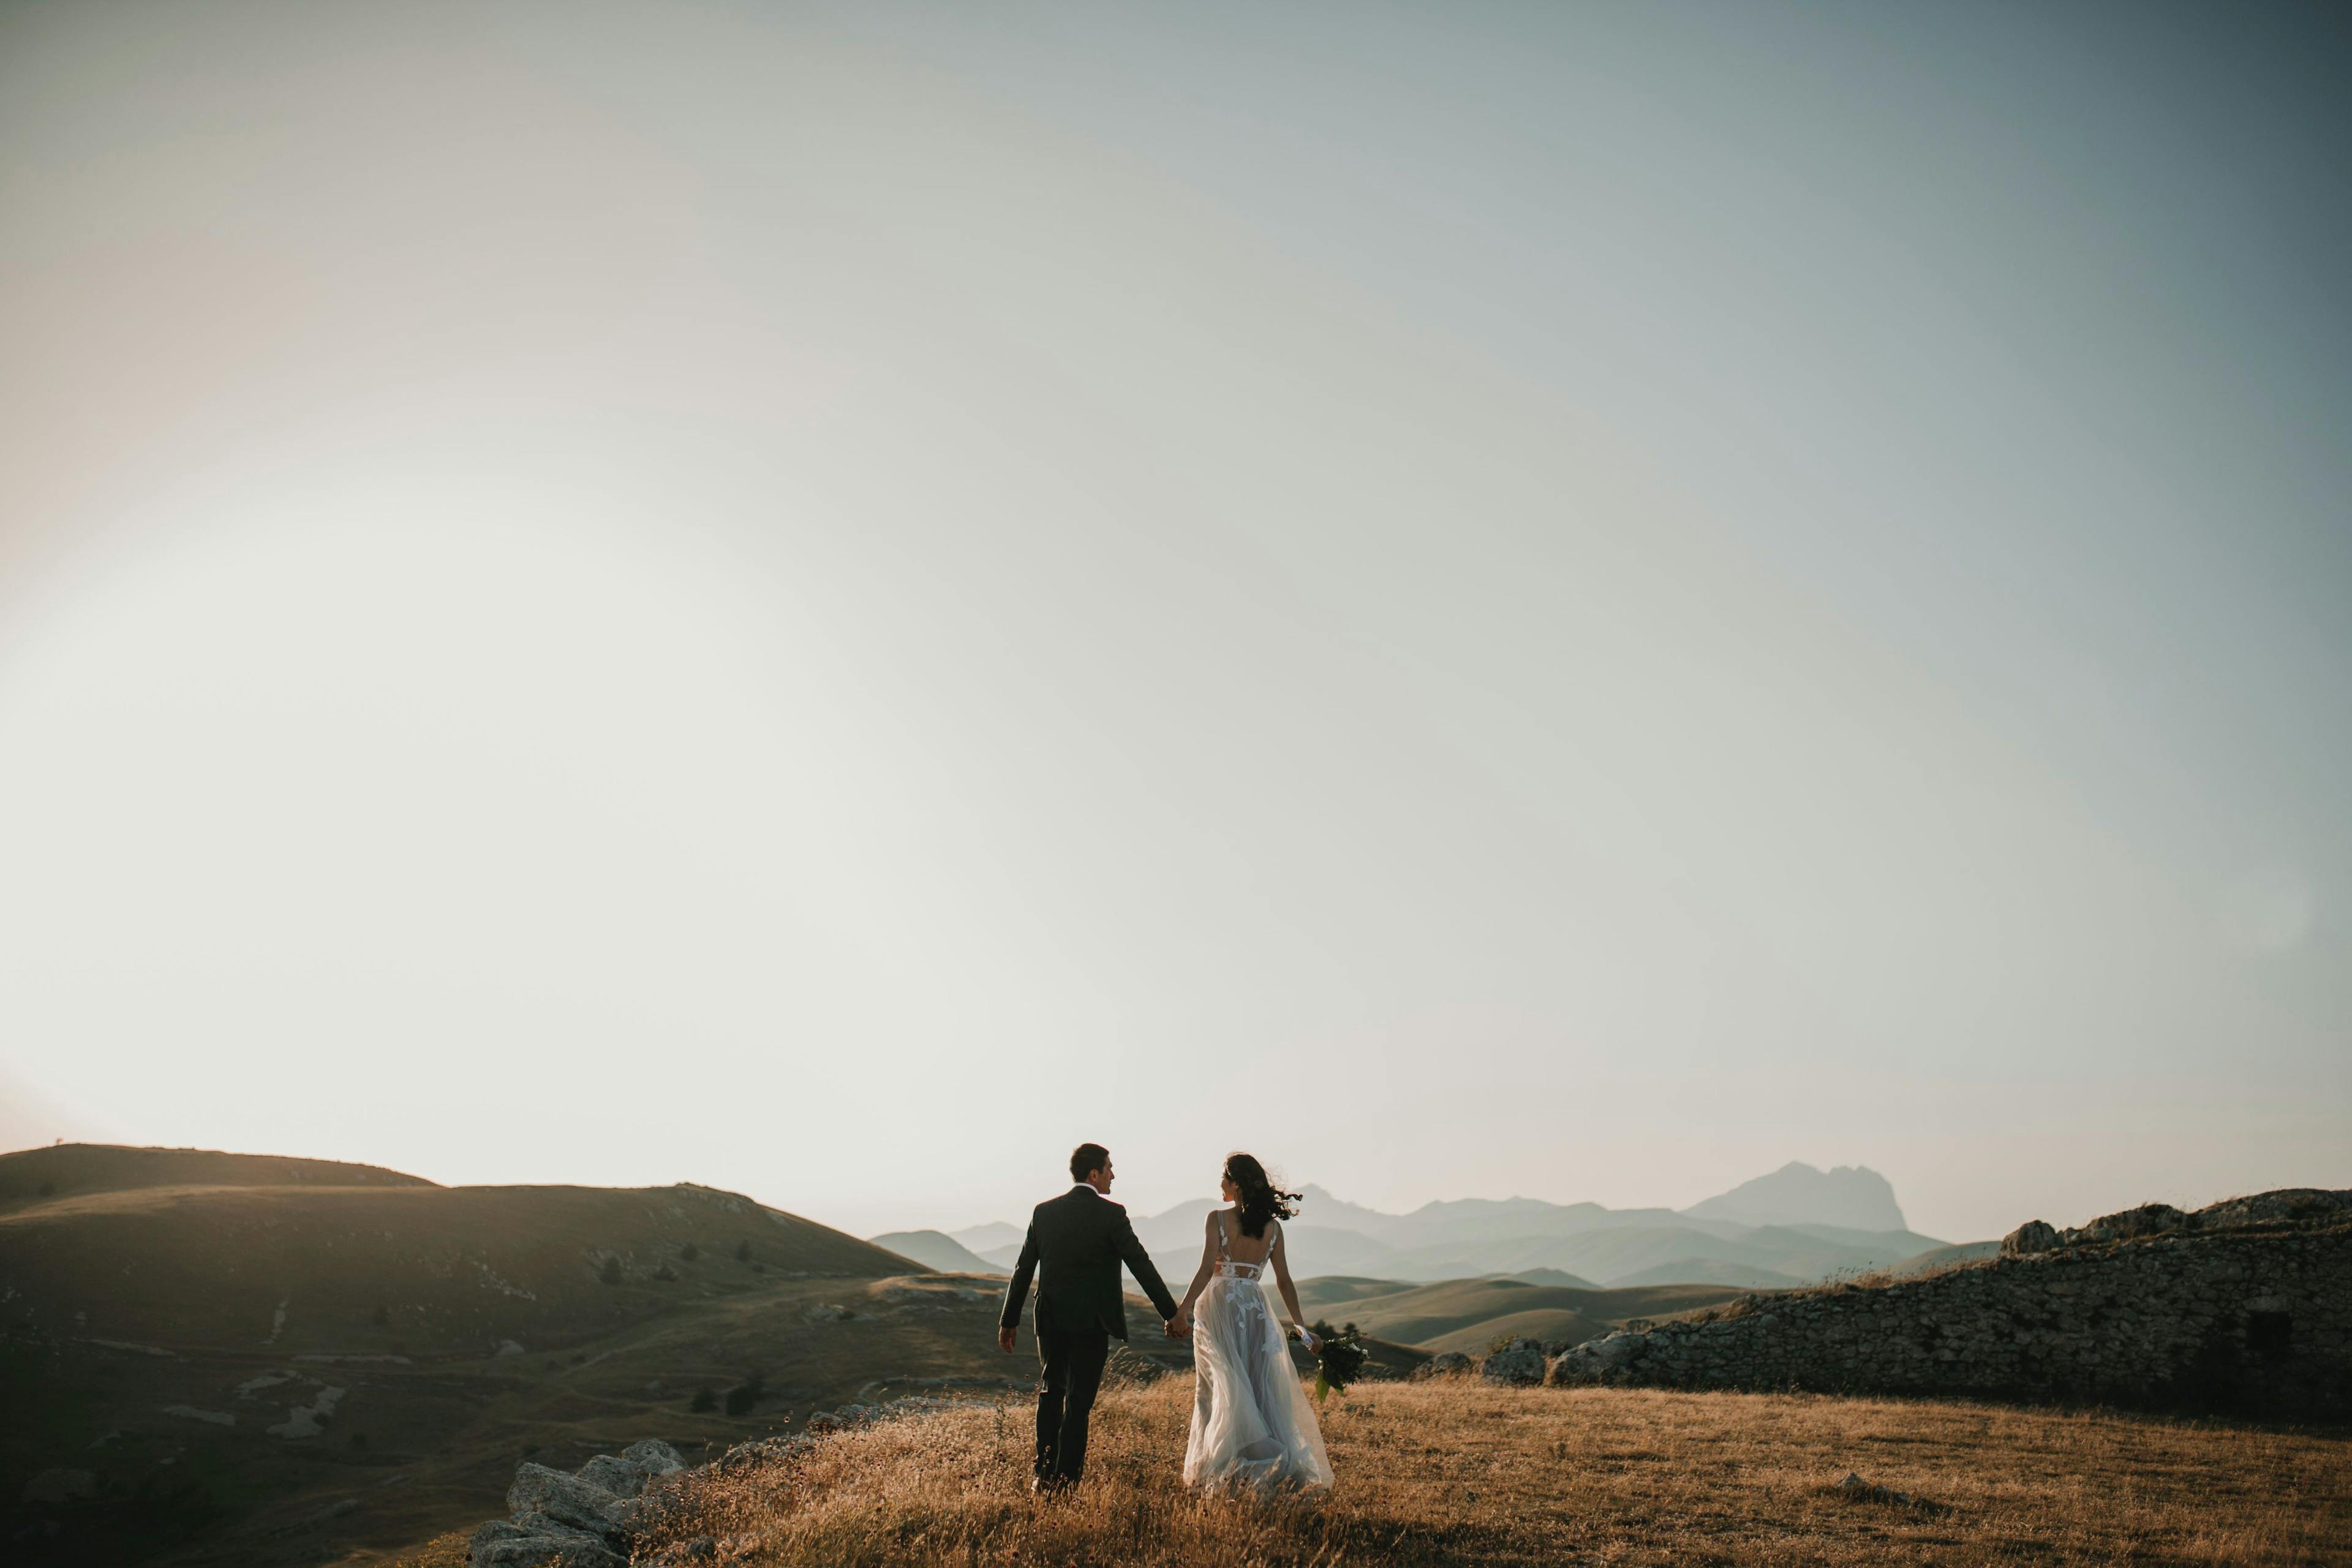 Os 5 melhores espaços para casar em São José dos Campos, SP